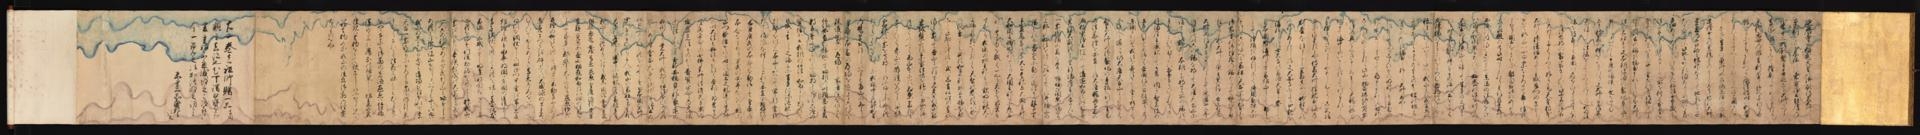 日本镰仓时代 天狗草纸画卷